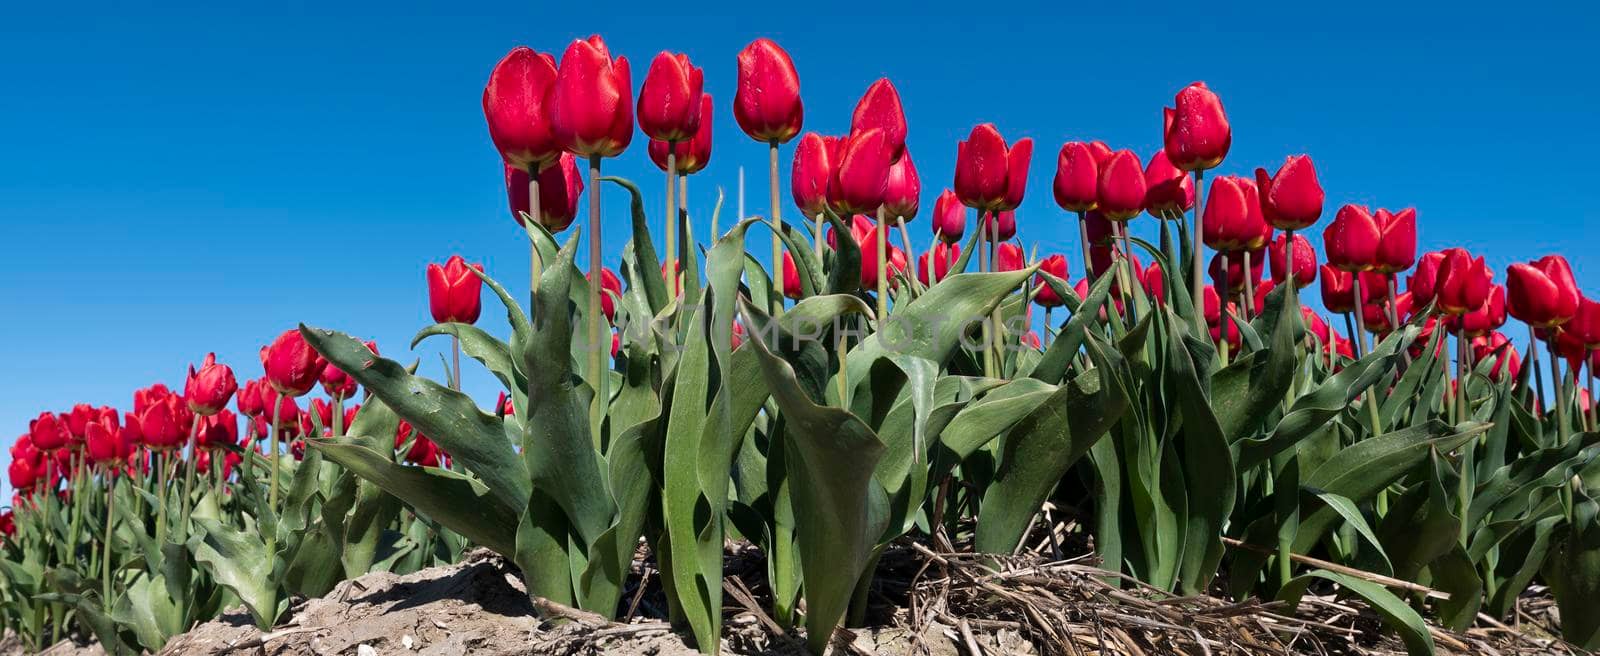 red tulips in field under blue sky by ahavelaar